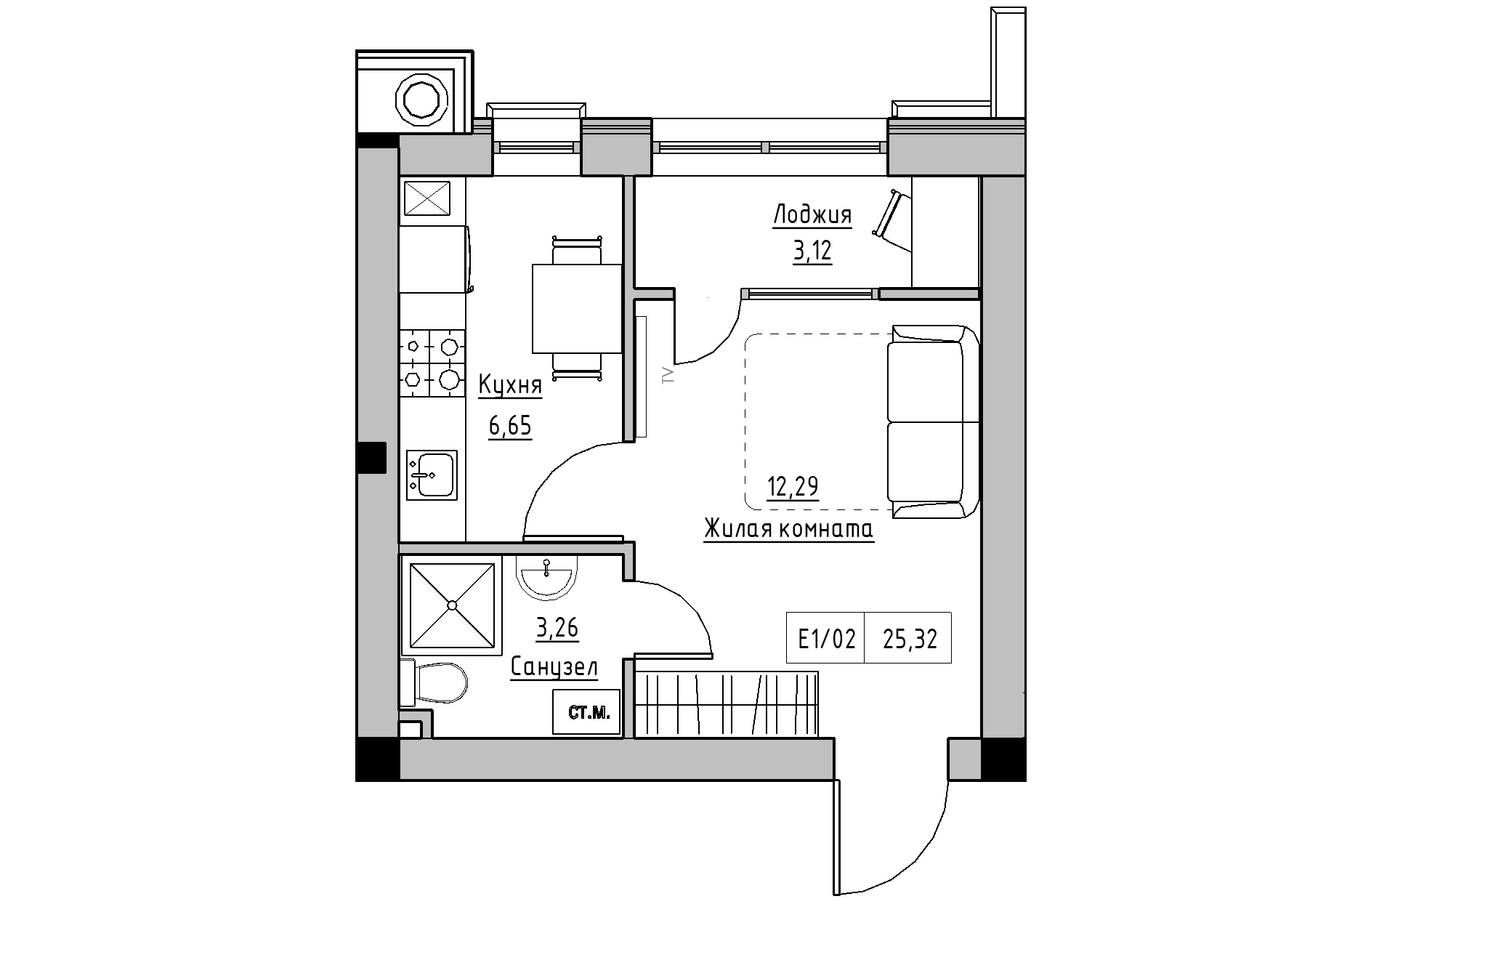 Планування 1-к квартира площею 25.32м2, KS-010-05/0004.